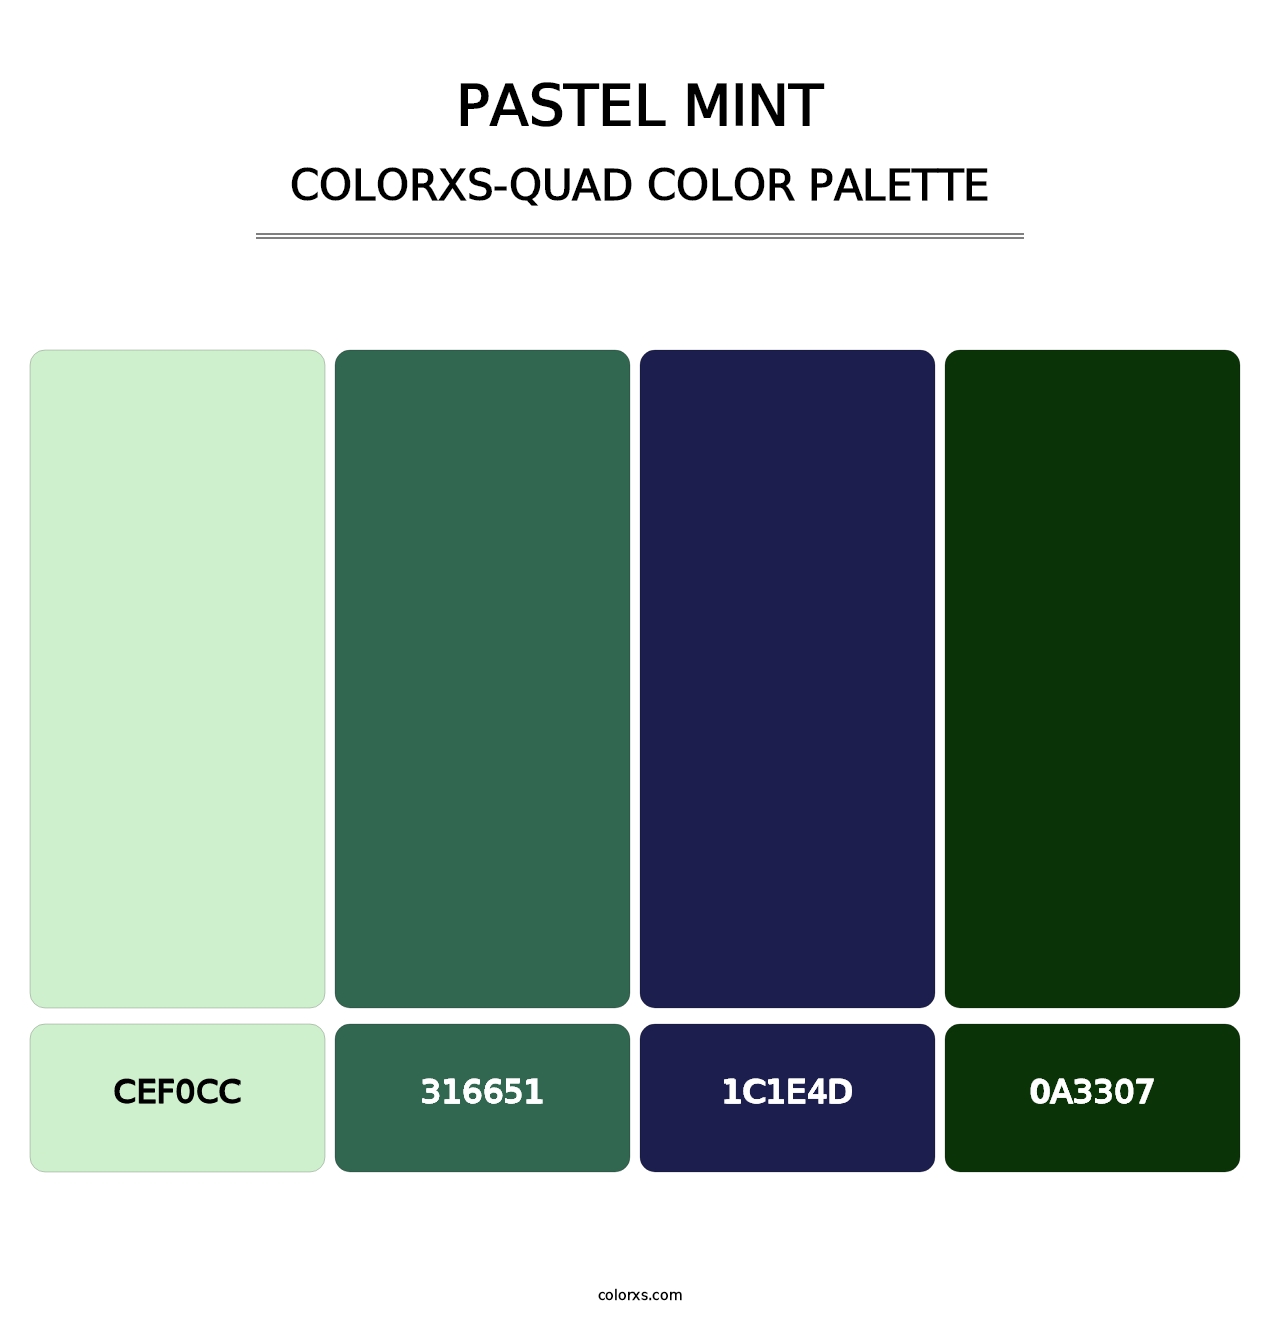 Pastel Mint - Colorxs Quad Palette